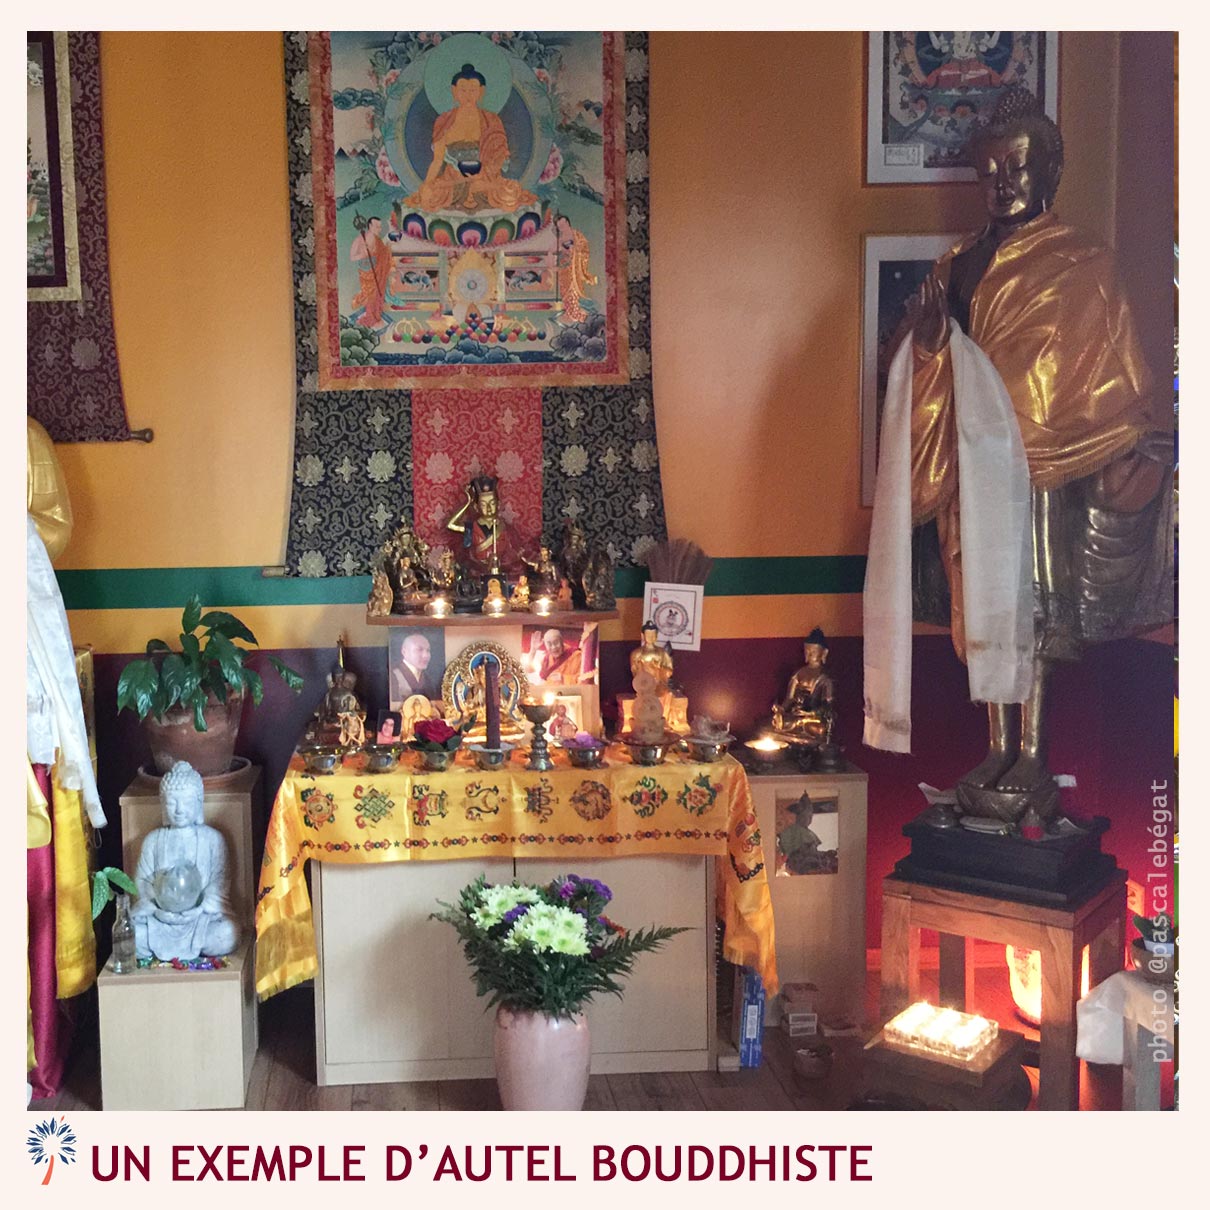 Autel bouddhiste